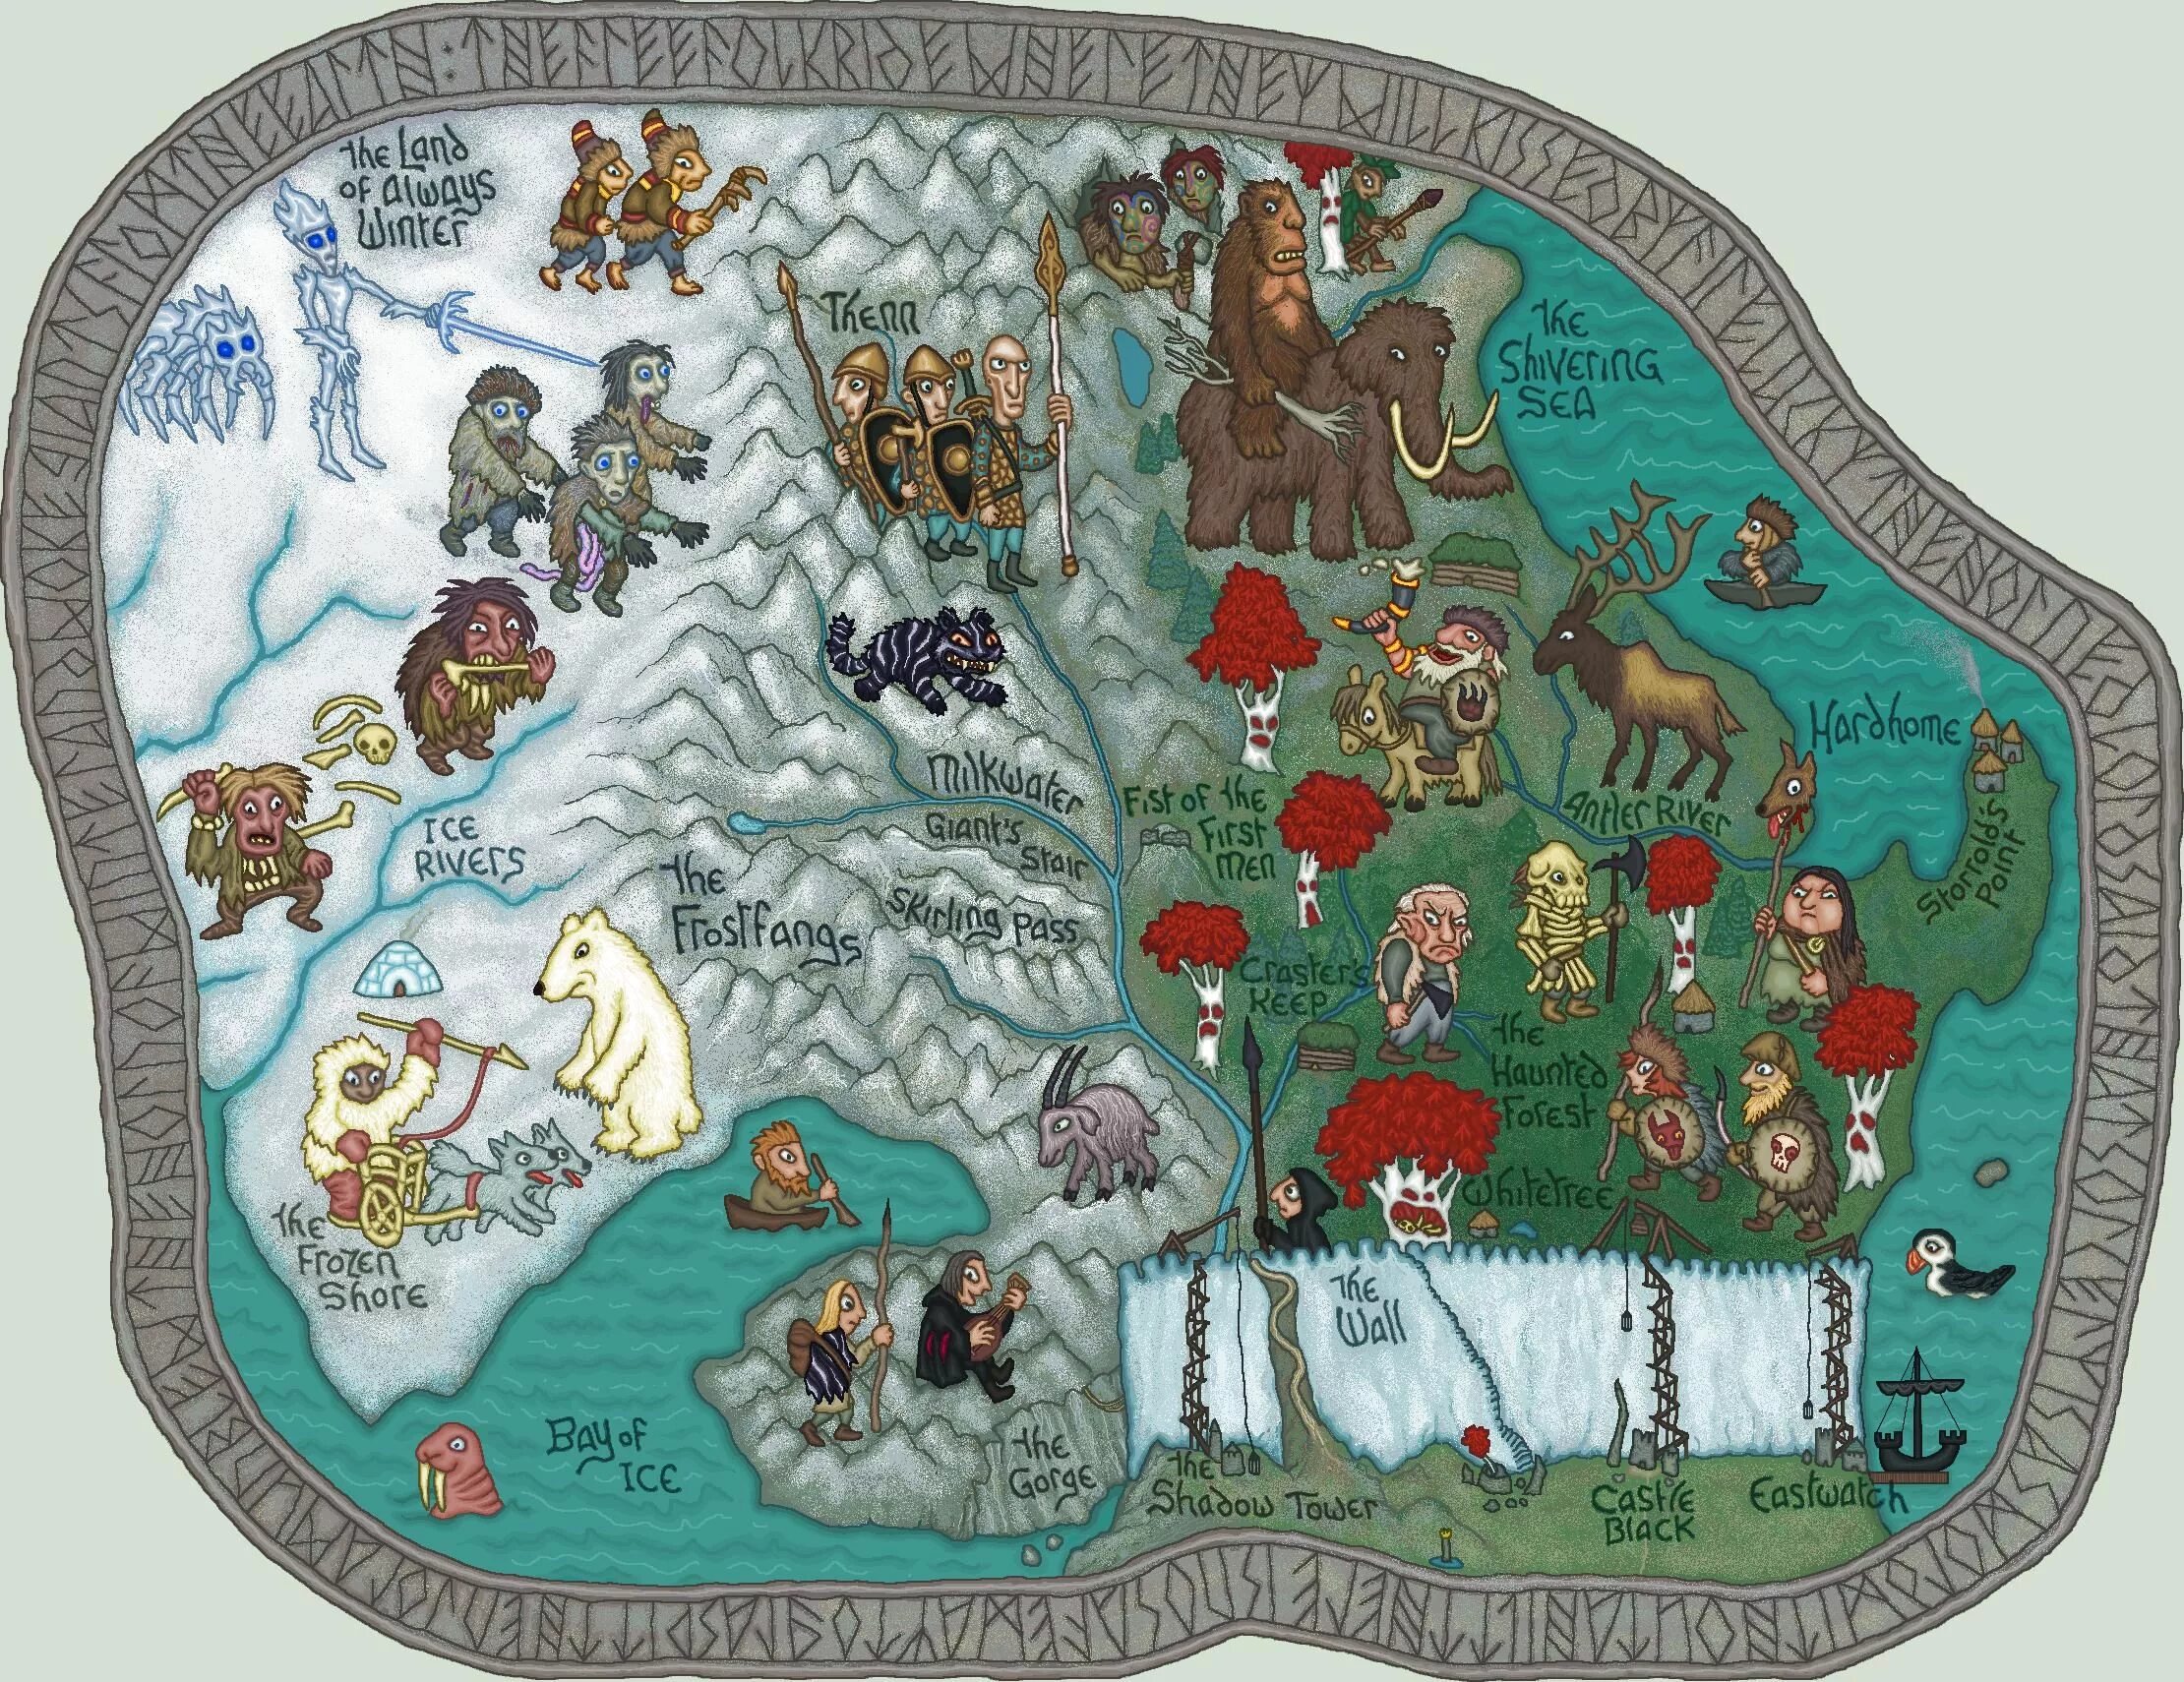 Младшая карта в игре. Карта Вестероса за стеной. Карты Вестероса Дж.и. Фуллертона.